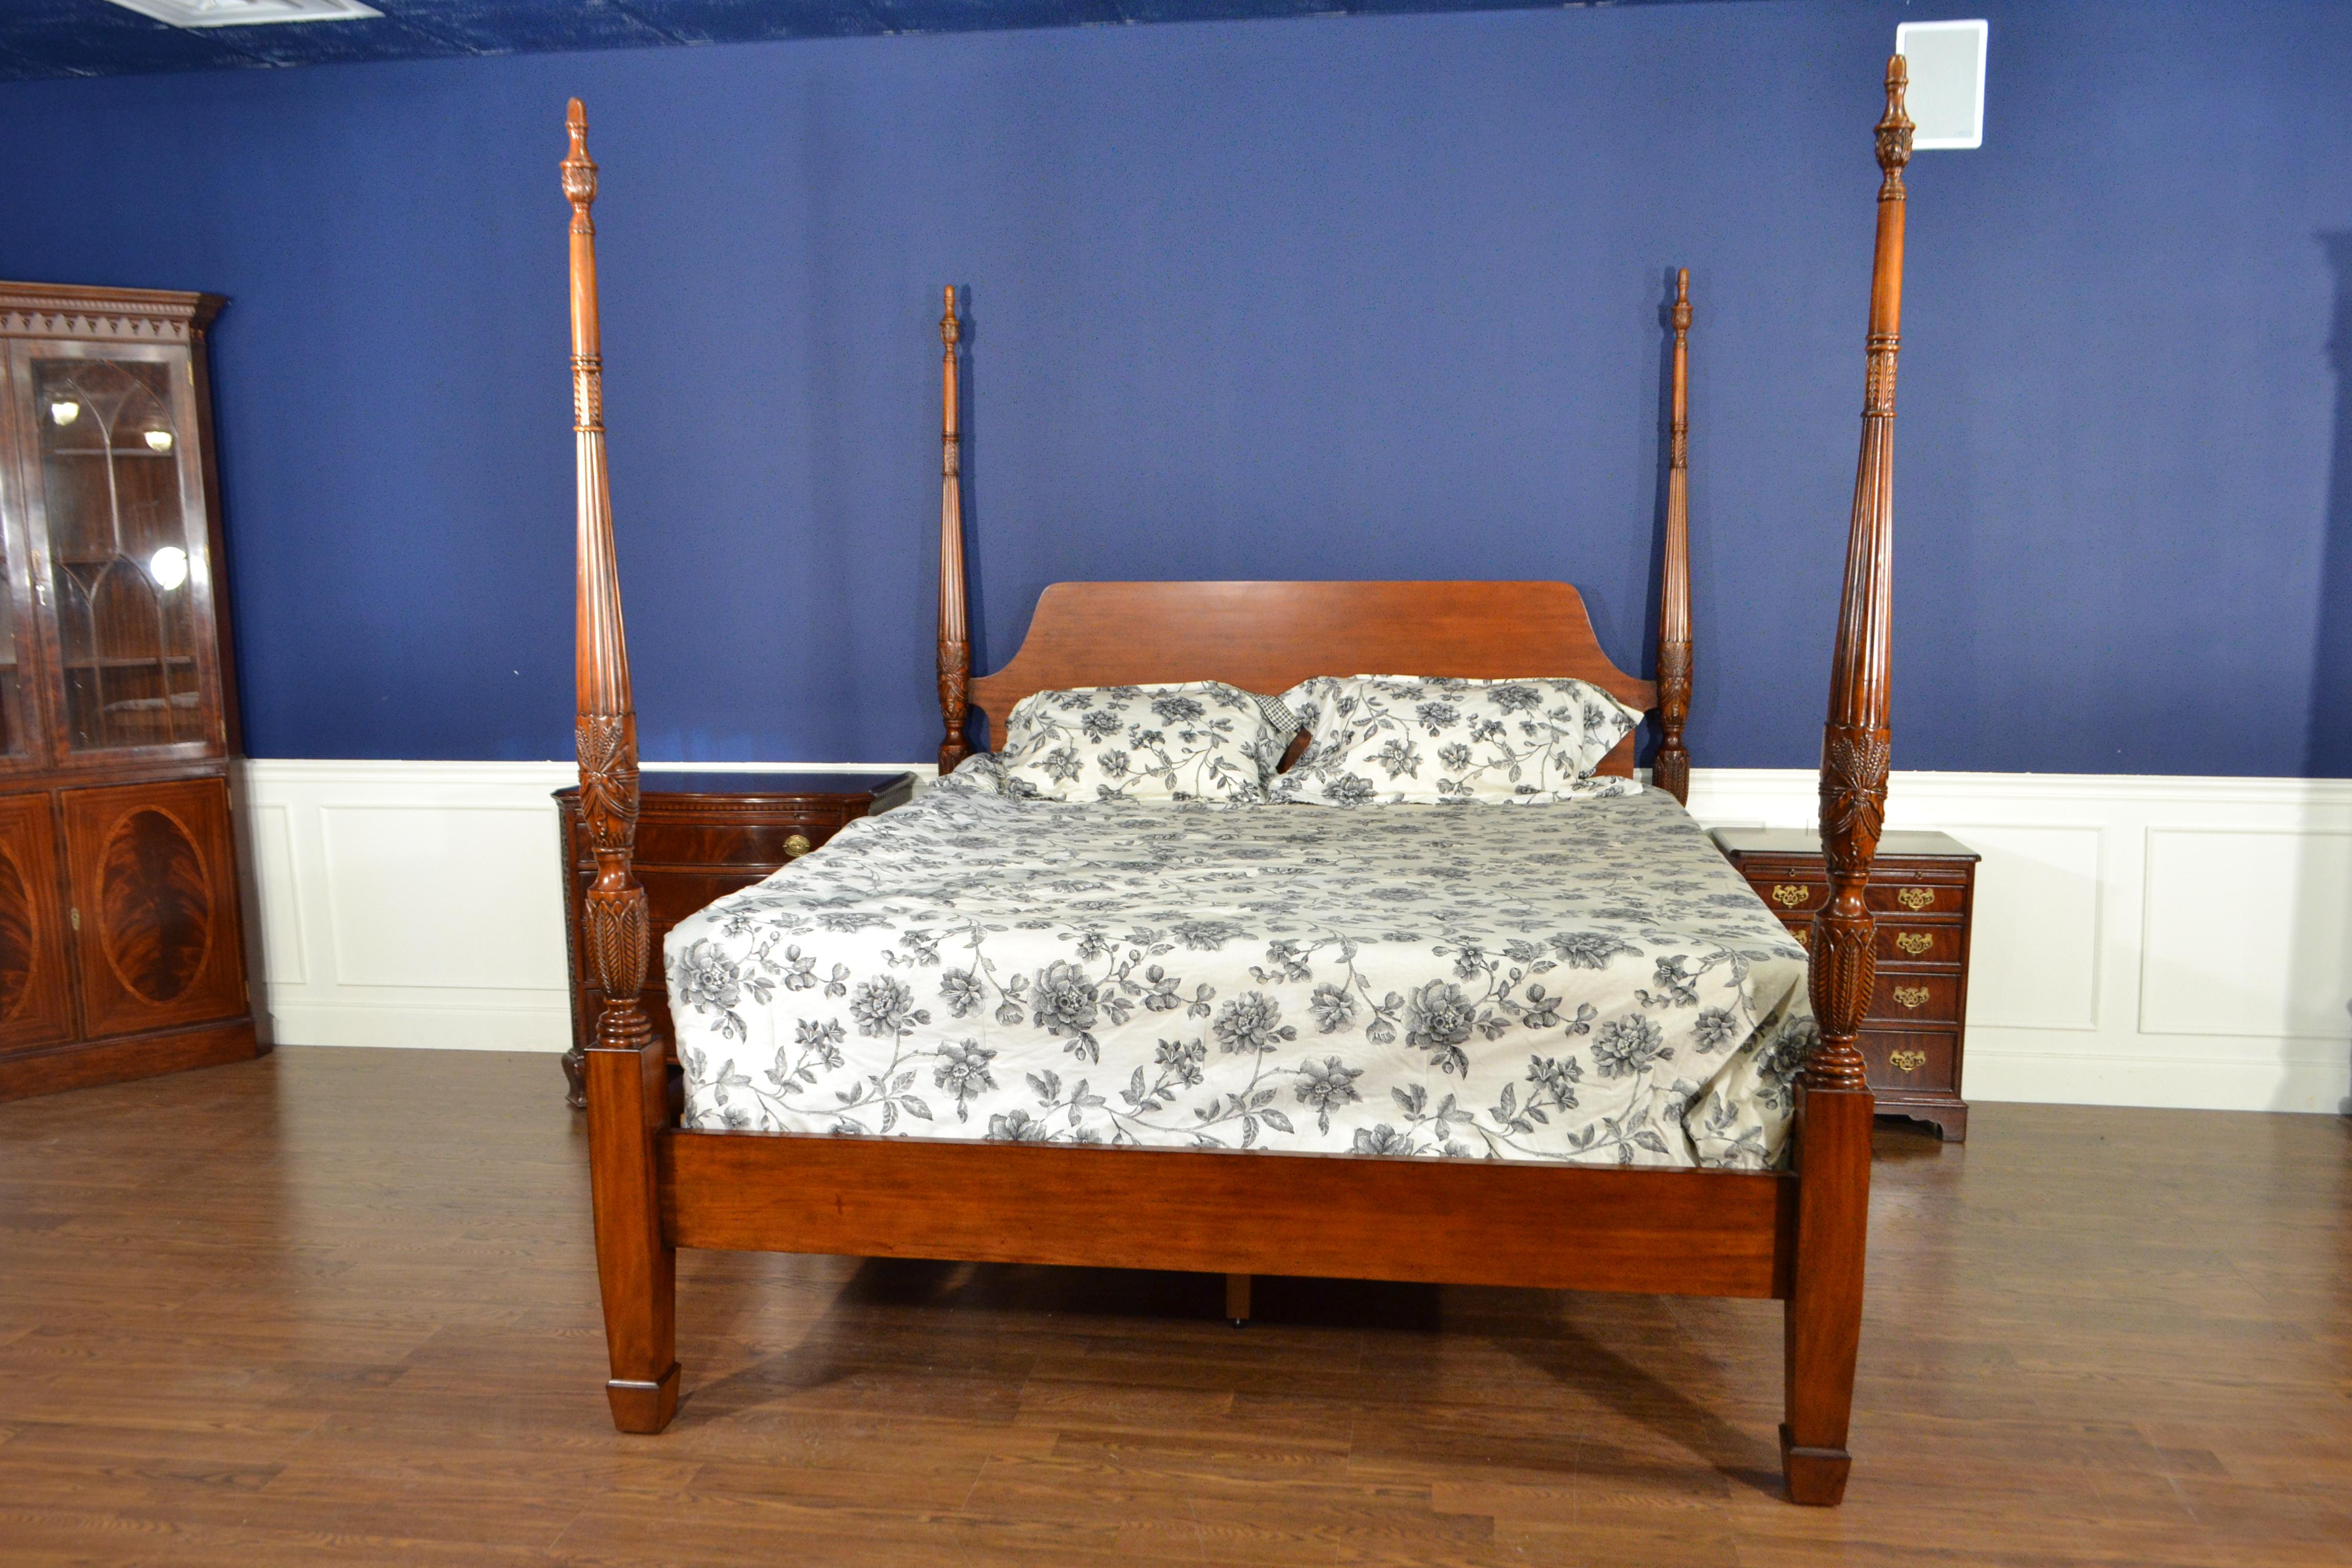 Il s'agit d'un nouveau lit à baldaquin traditionnel king size en acajou sculpté par Leighton Hall Furniture. Son design s'inspire des lits à baldaquin de la période Regency et se caractérise par des poteaux cannelés et effilés, sculptés à la main